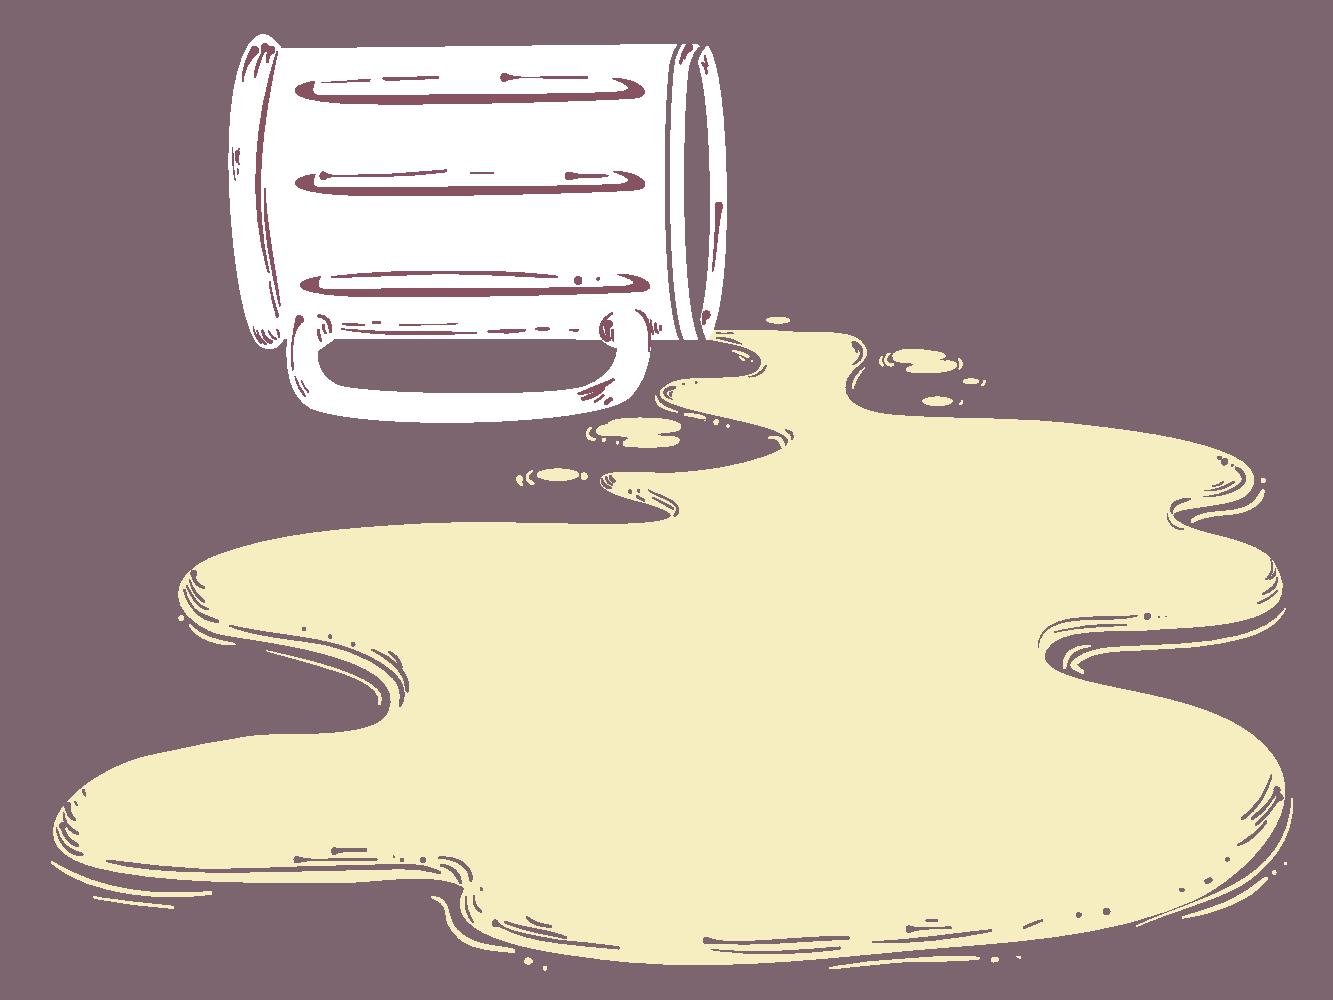 An illustration of a spilled beer mug